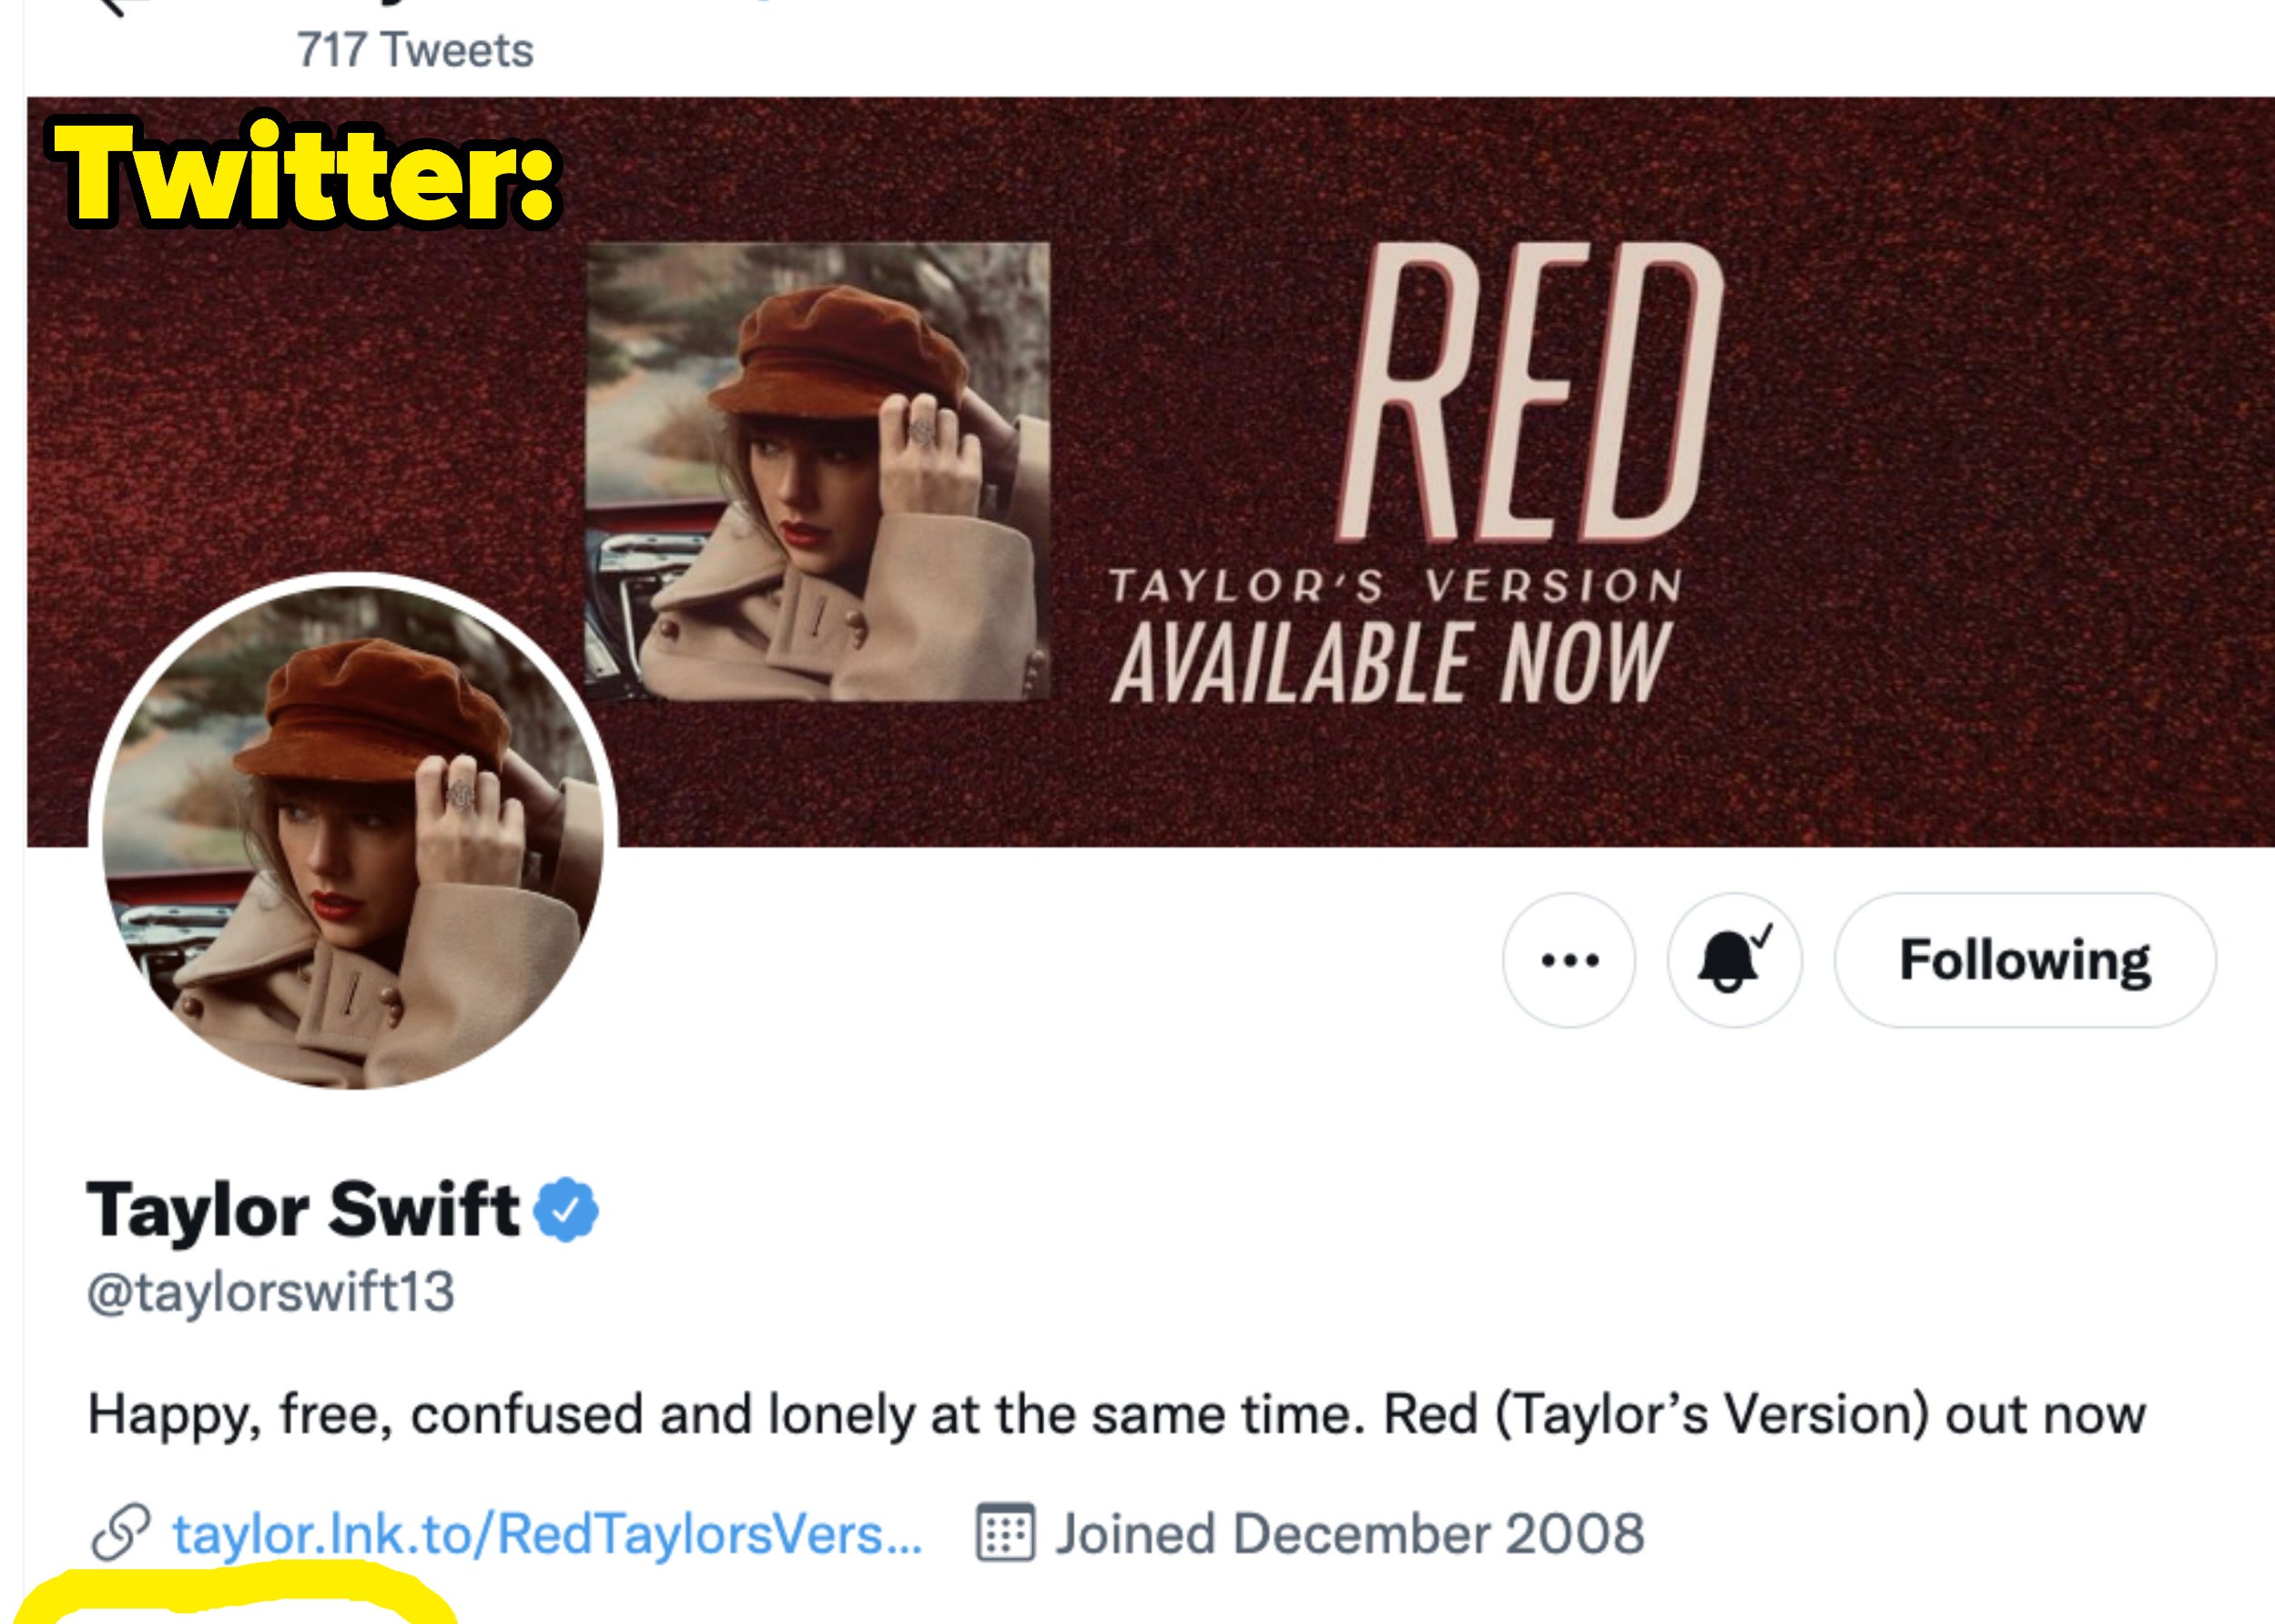 Taylor Swift following 0 people on Twitter